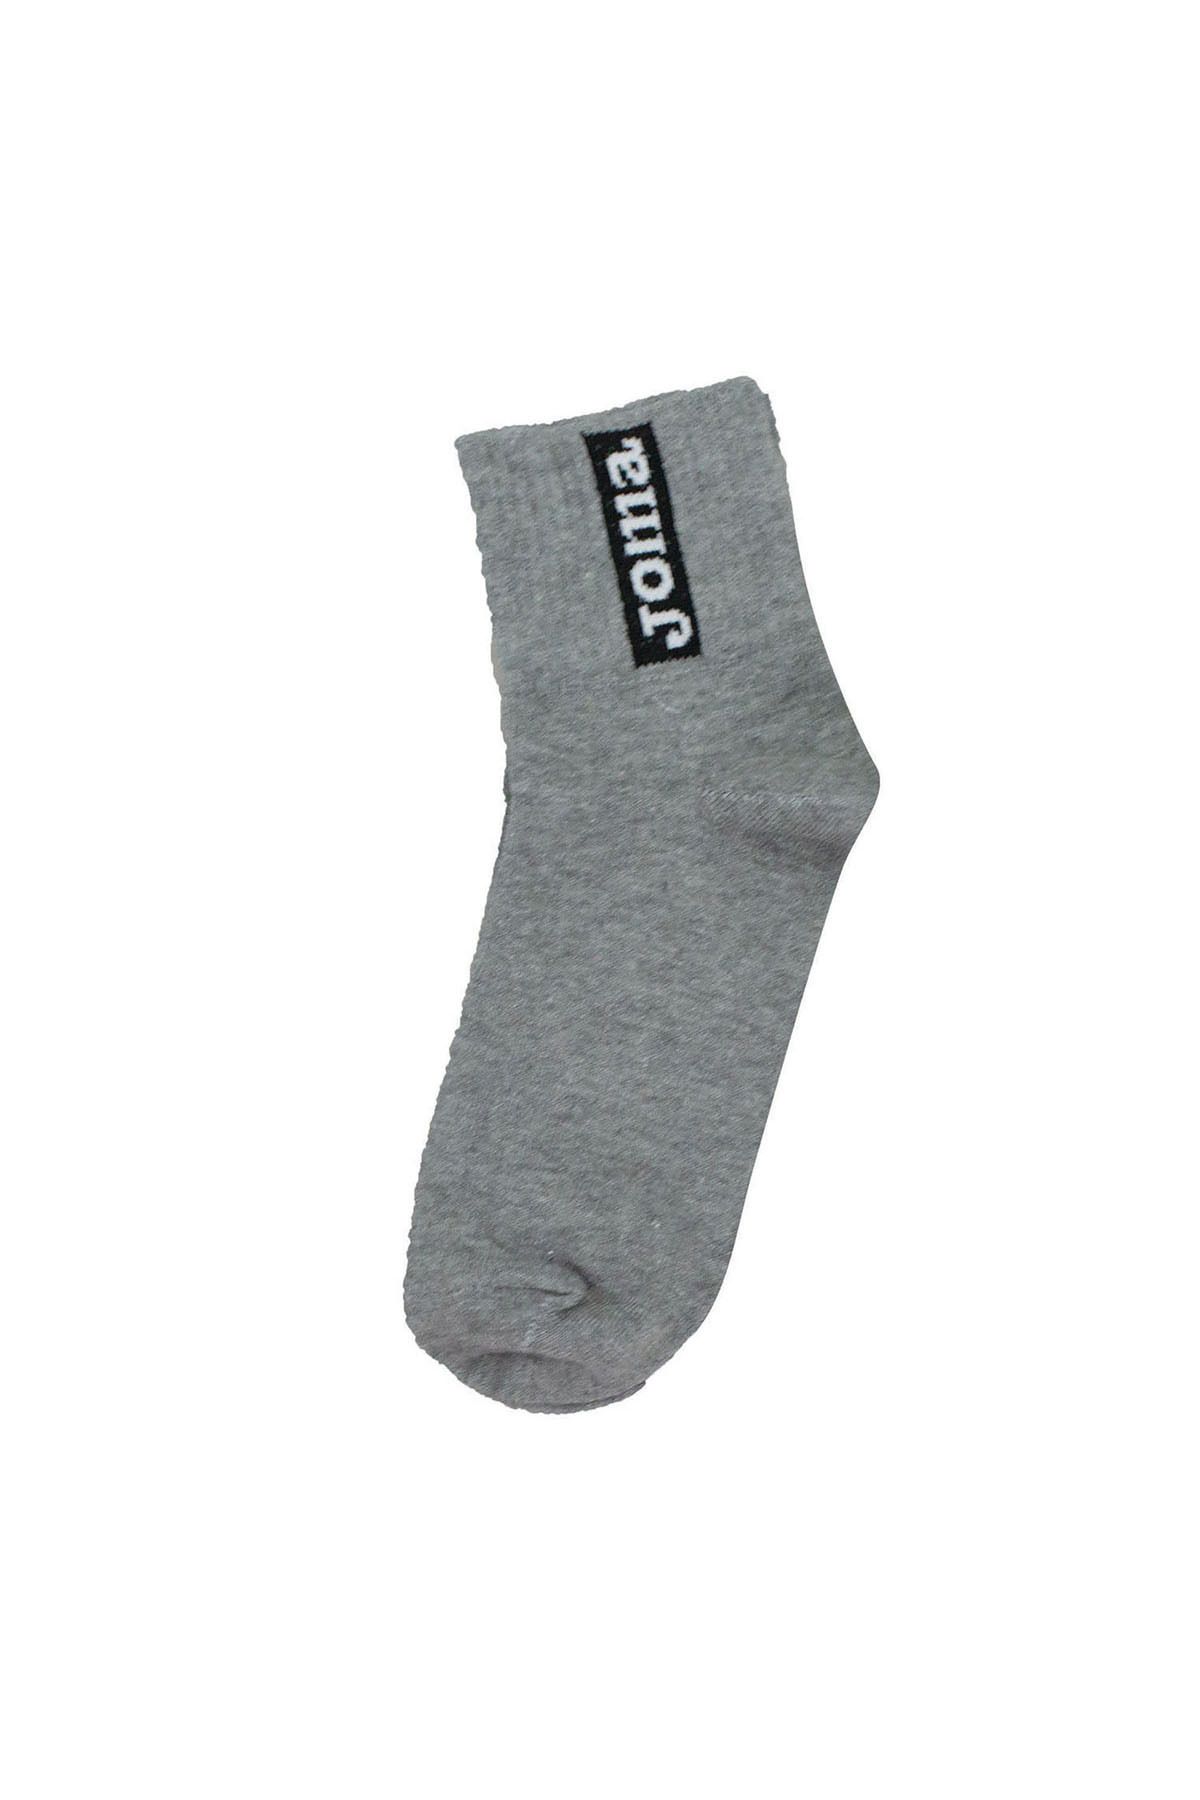 Joma Futbol Maç Kısa Çorap Modelli 9212075